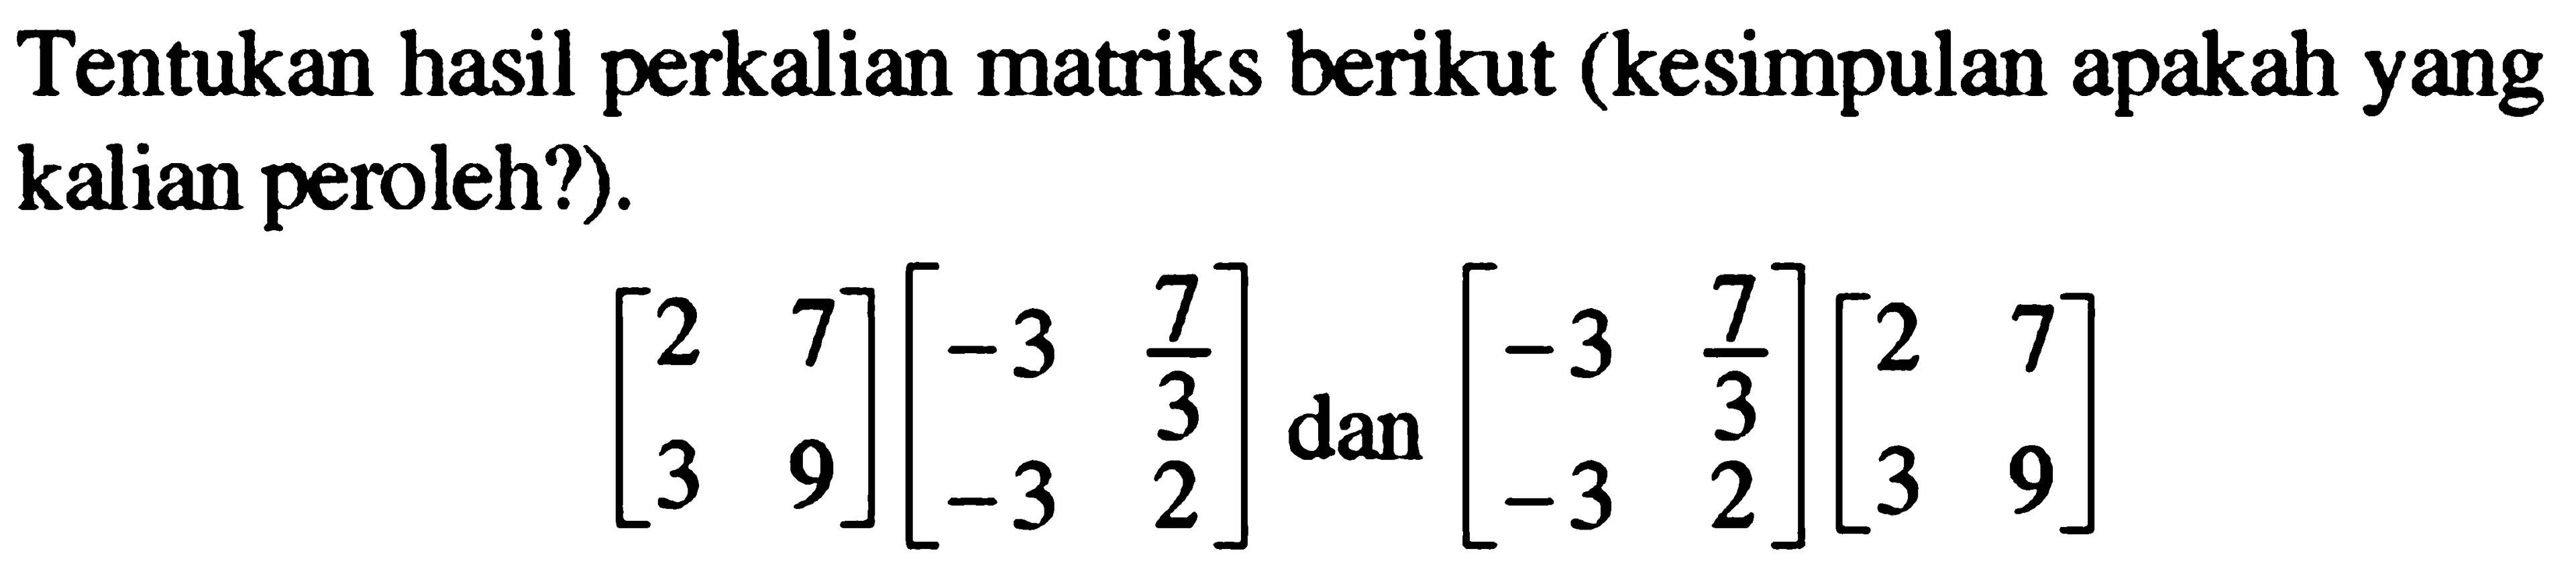 Tentukan hasil perkalian matriks berikut (kesimpulan apakah yang kalian peroleh?). [2 7 3 9][-3 7/3 -3 2] dan [-3 7/3 -3 2][2 7 3 9]